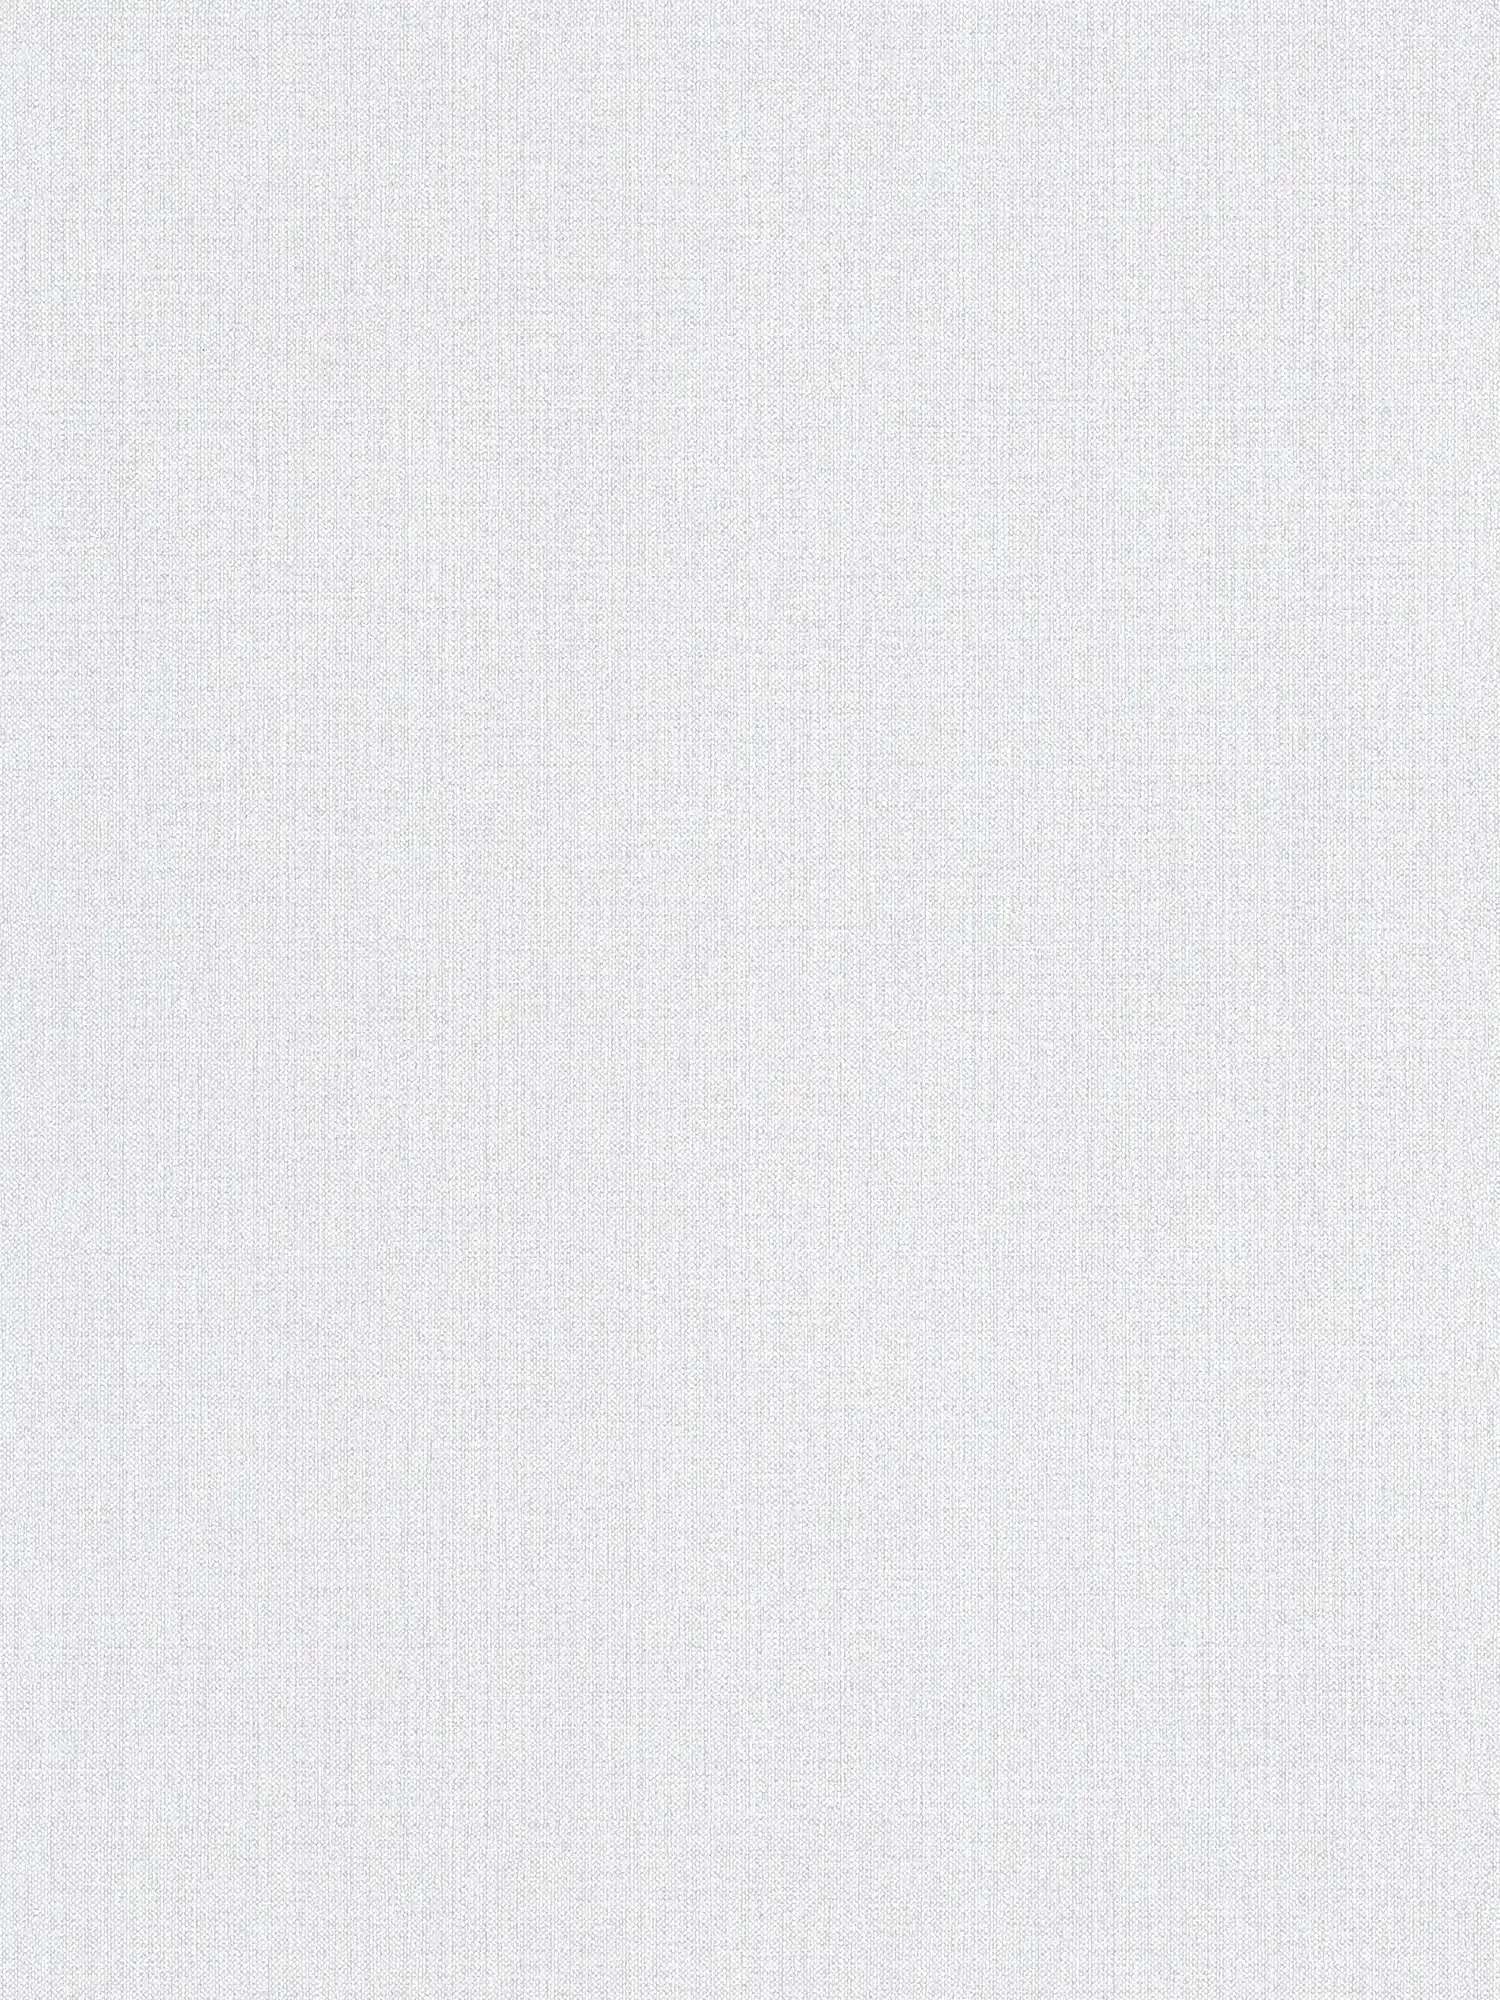 Carta da parati in lino grigio chiaro con struttura tessile in stile scandi
